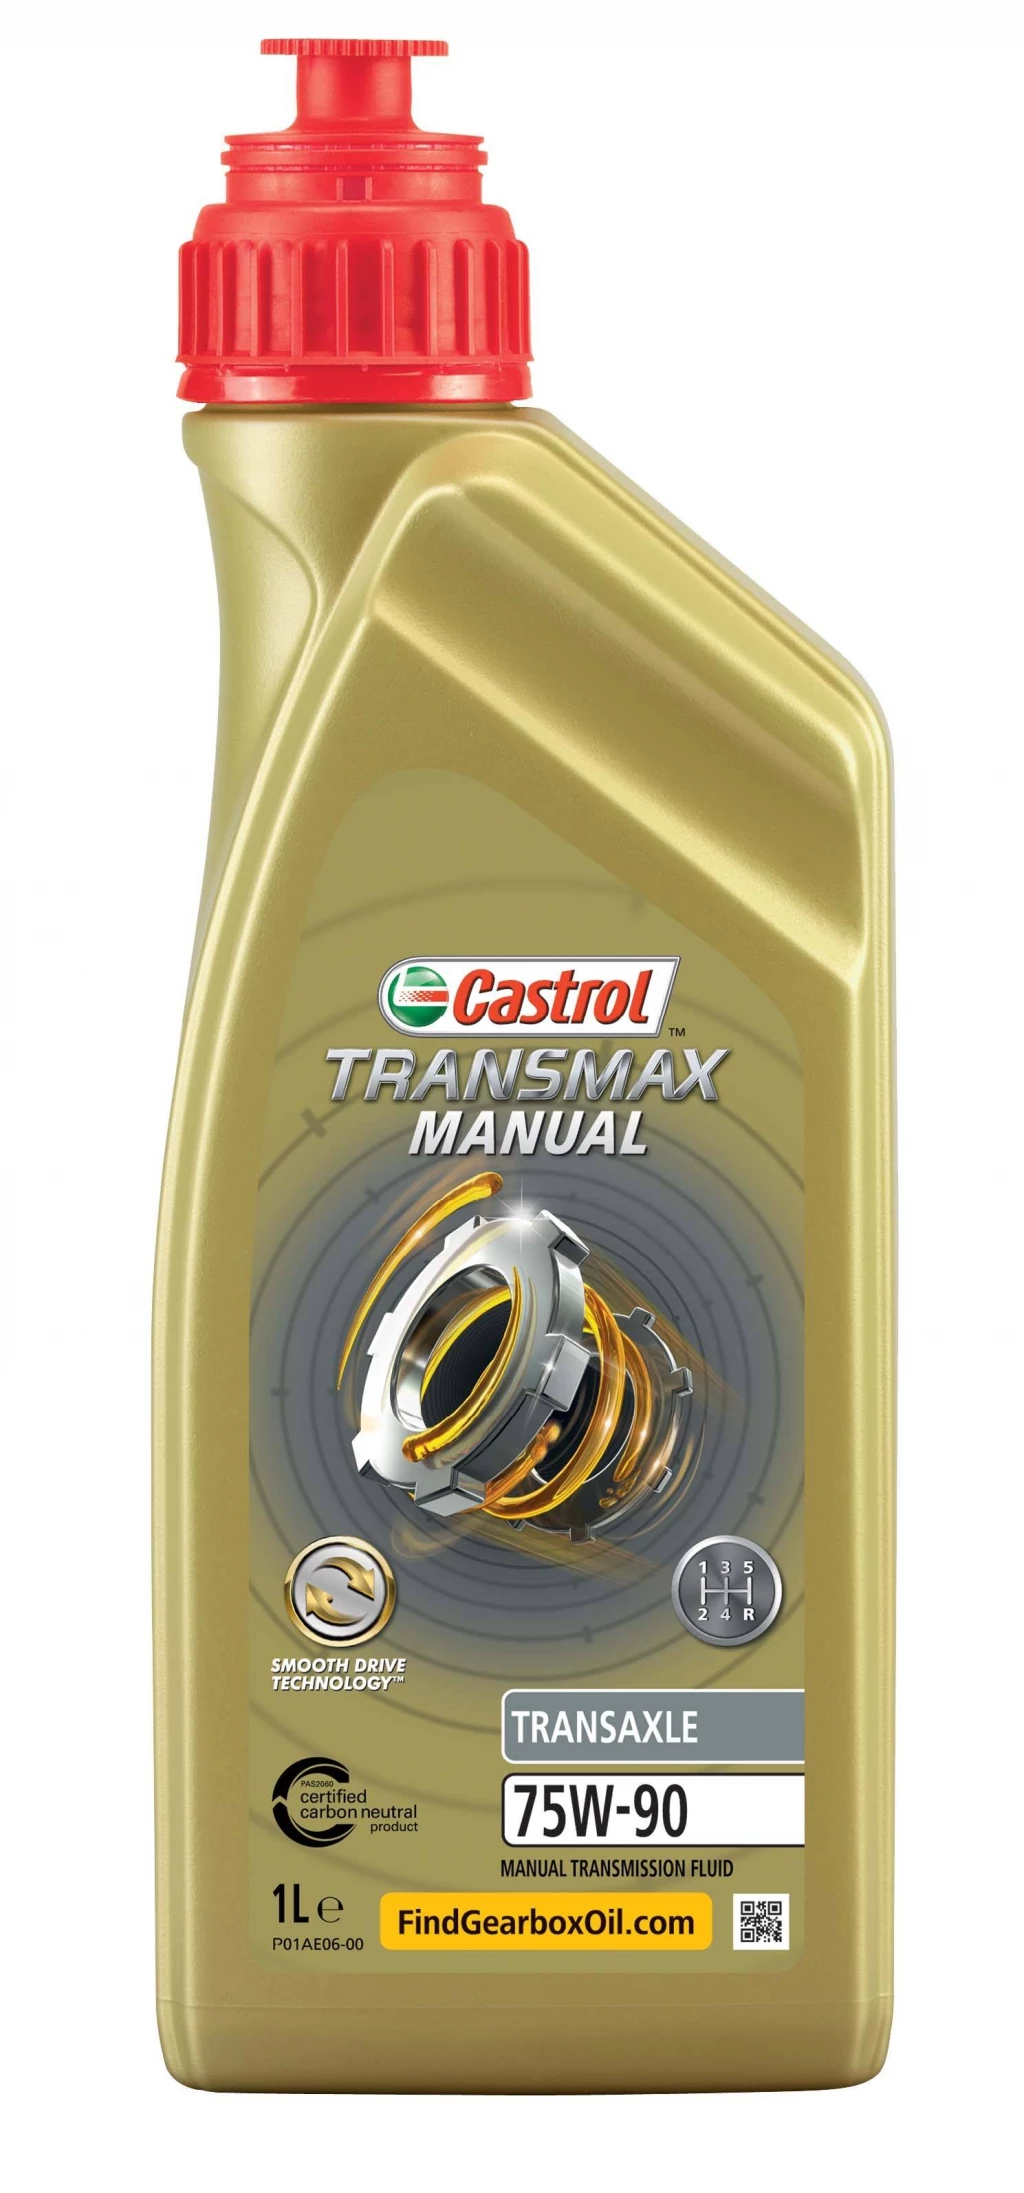 Масло трансмиссионное Castrol Transmax Manual Transaxle 75W-90 синтетическое 1 л